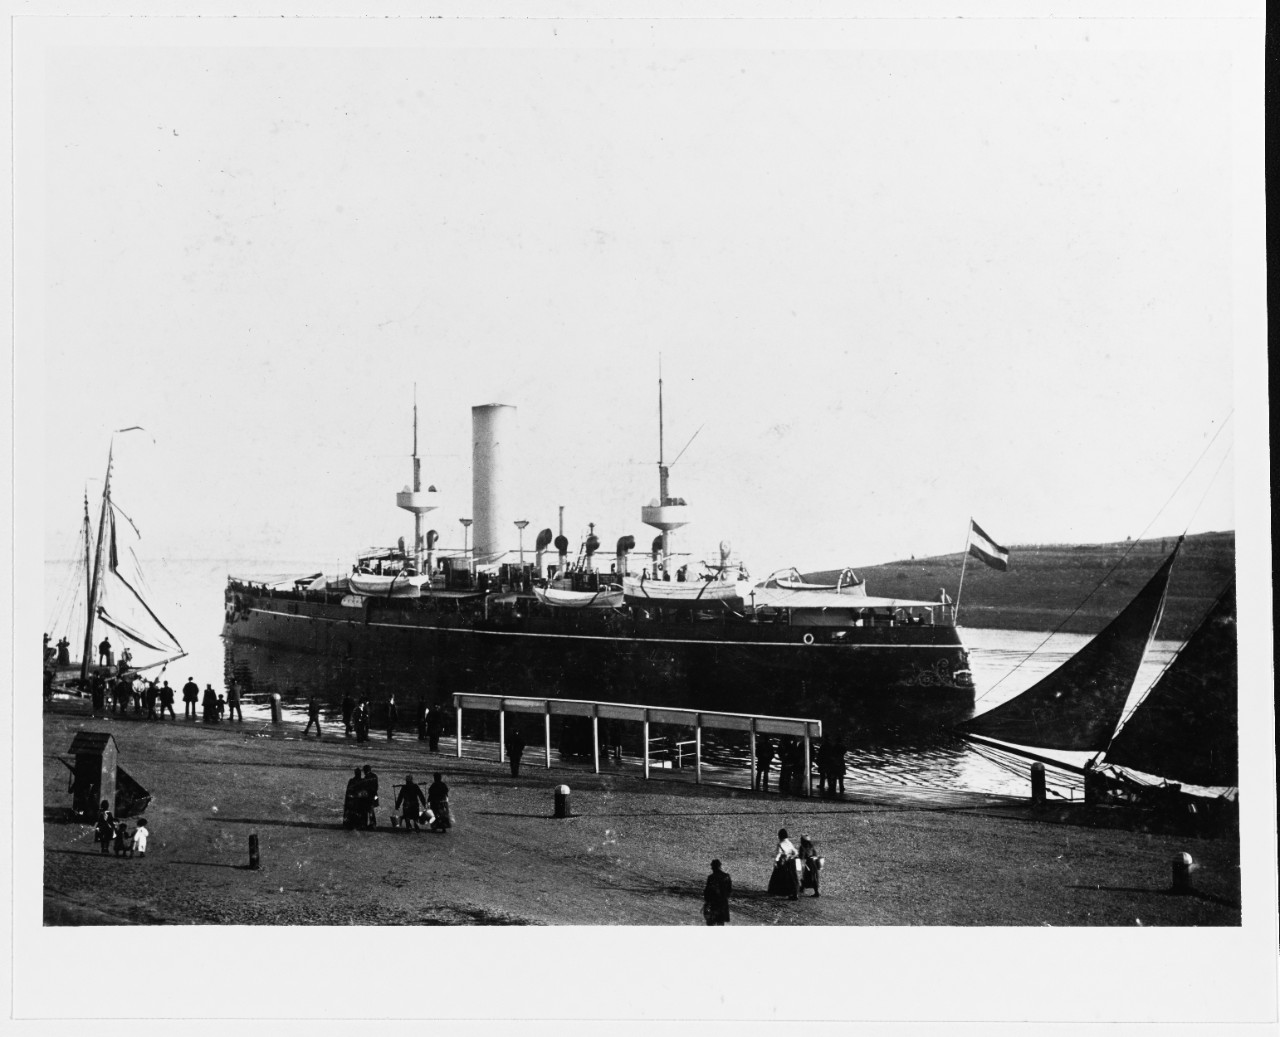 KORTENAER (Dutch Battleship, 1894-1920)